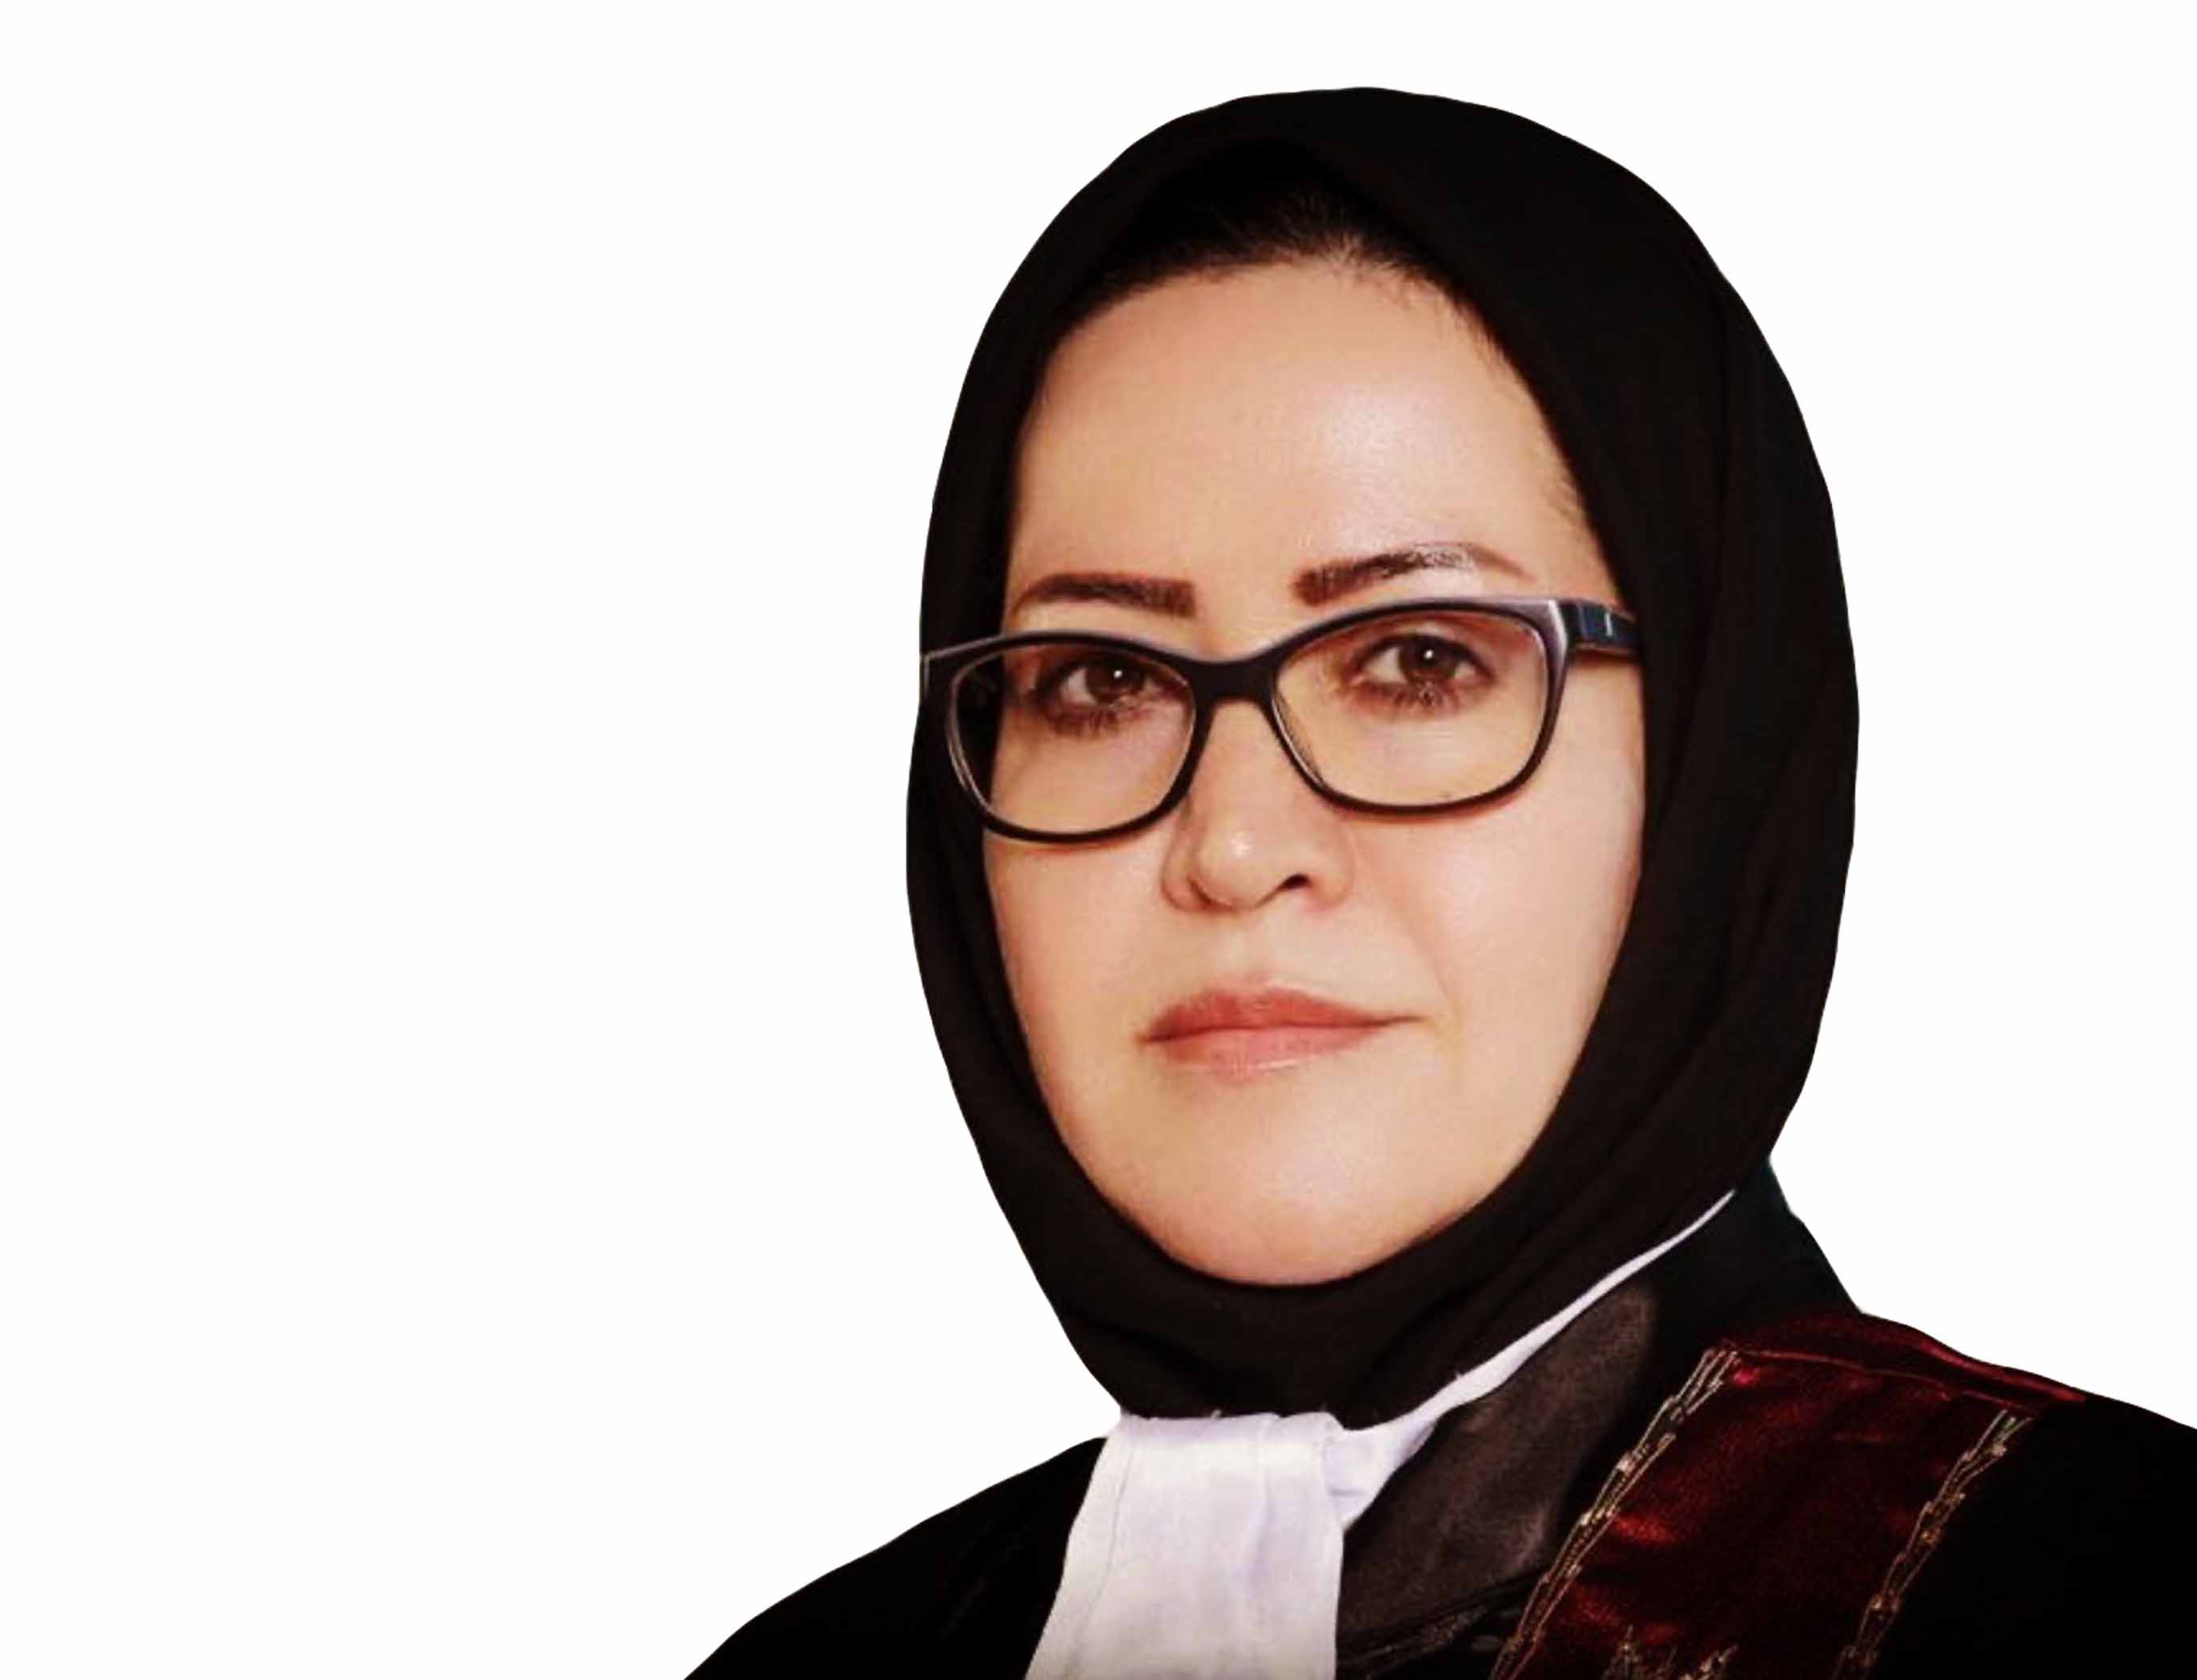 همایش ملی کانون های وکلای دادگستری سراسر کشور به میزبانی اصفهان برگزار می شود